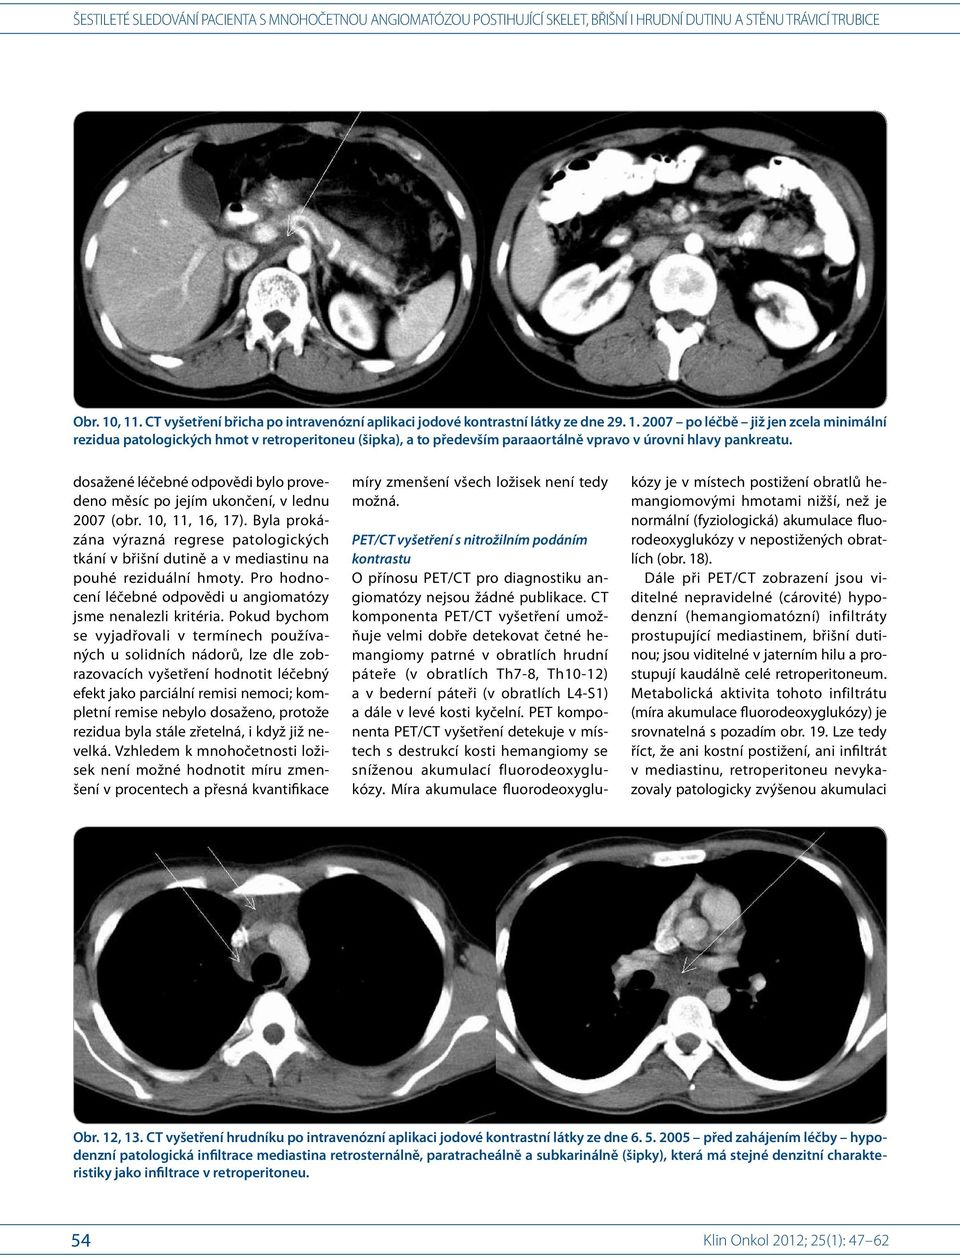 CT komponenta PET/CT vyšetření umožňuje velmi dobře detekovat četné hemangiomy patrné v obratlích hrudní páteře (v obratlích Th7-8, Th10-12) a v bederní páteři (v obratlích L4-S1) a dále v levé kosti